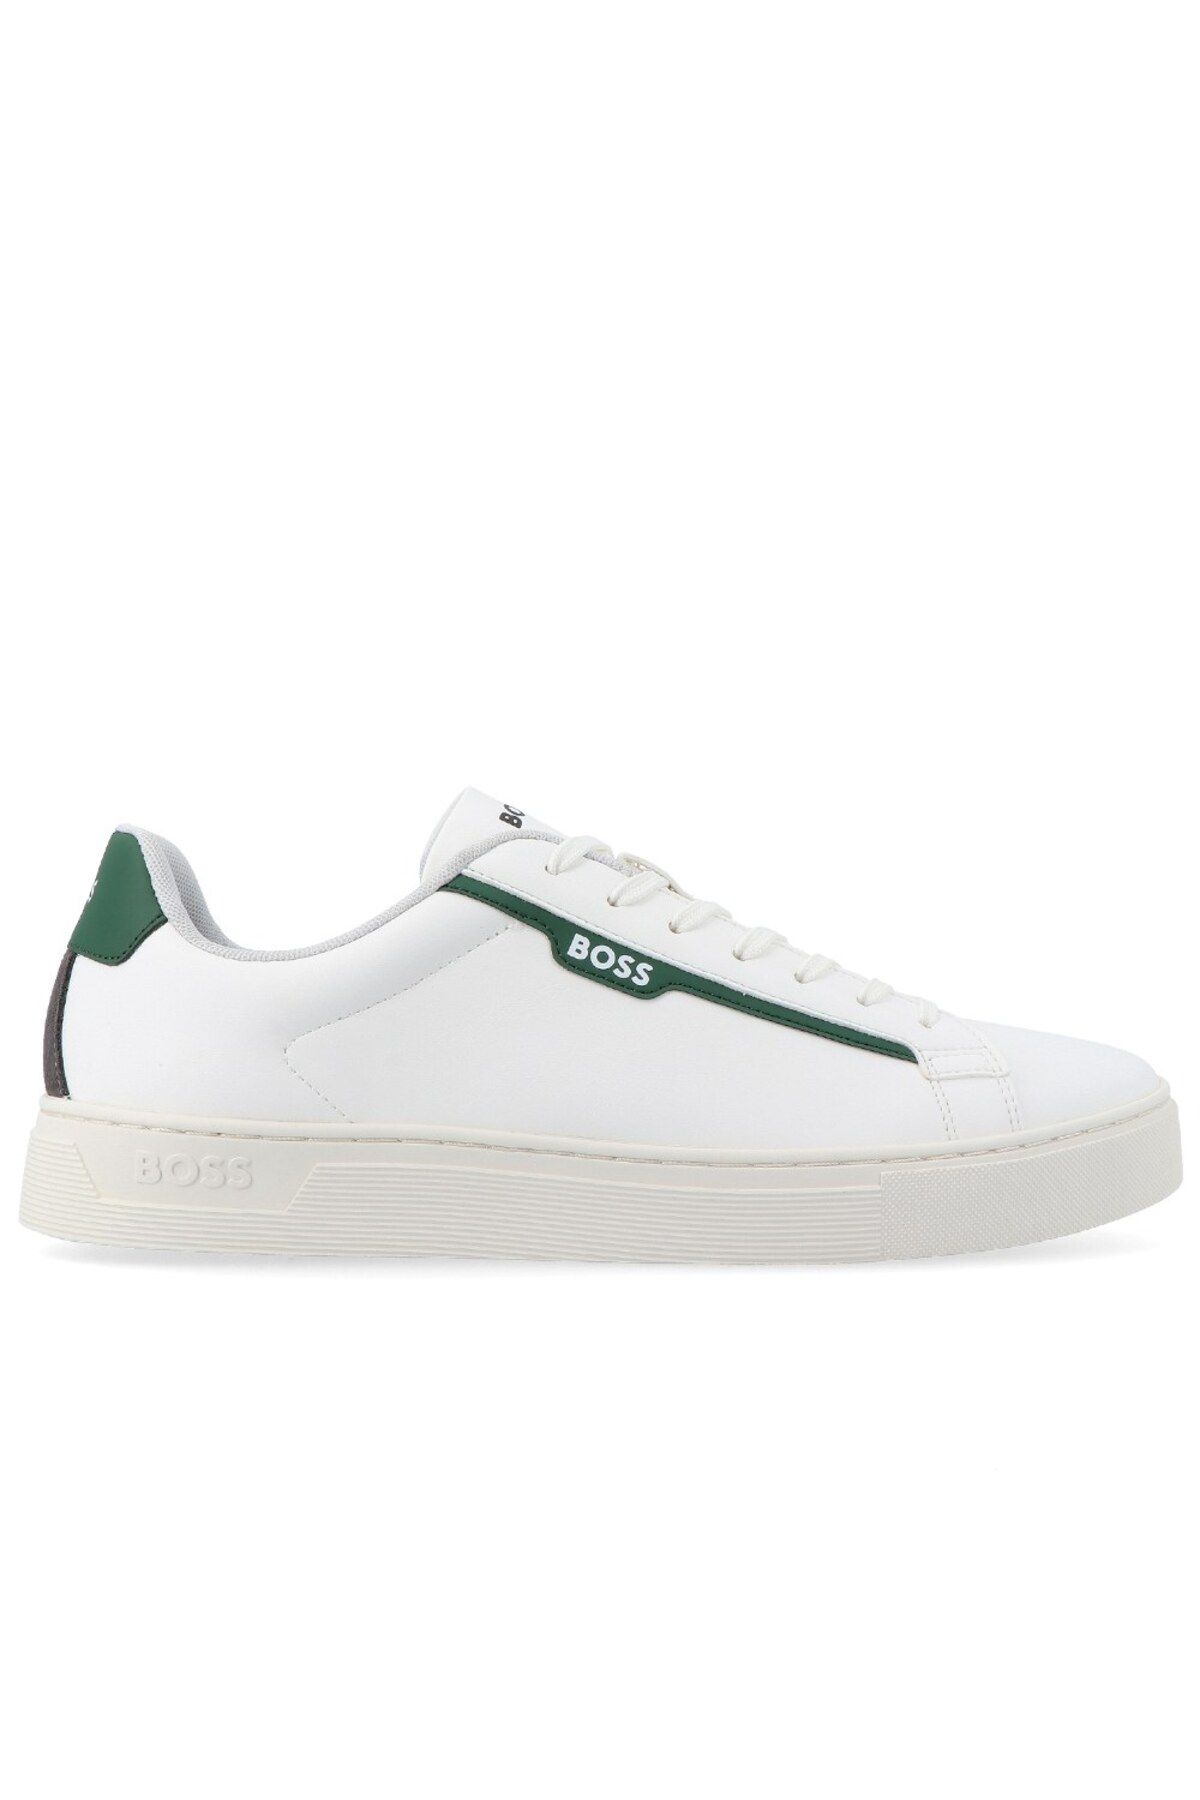 BOSS Erkek Marka Logolu Bağcıklı Kaydırmaz Tabanlı Günlük Yeşil - Beyaz Sneaker 50502869-130